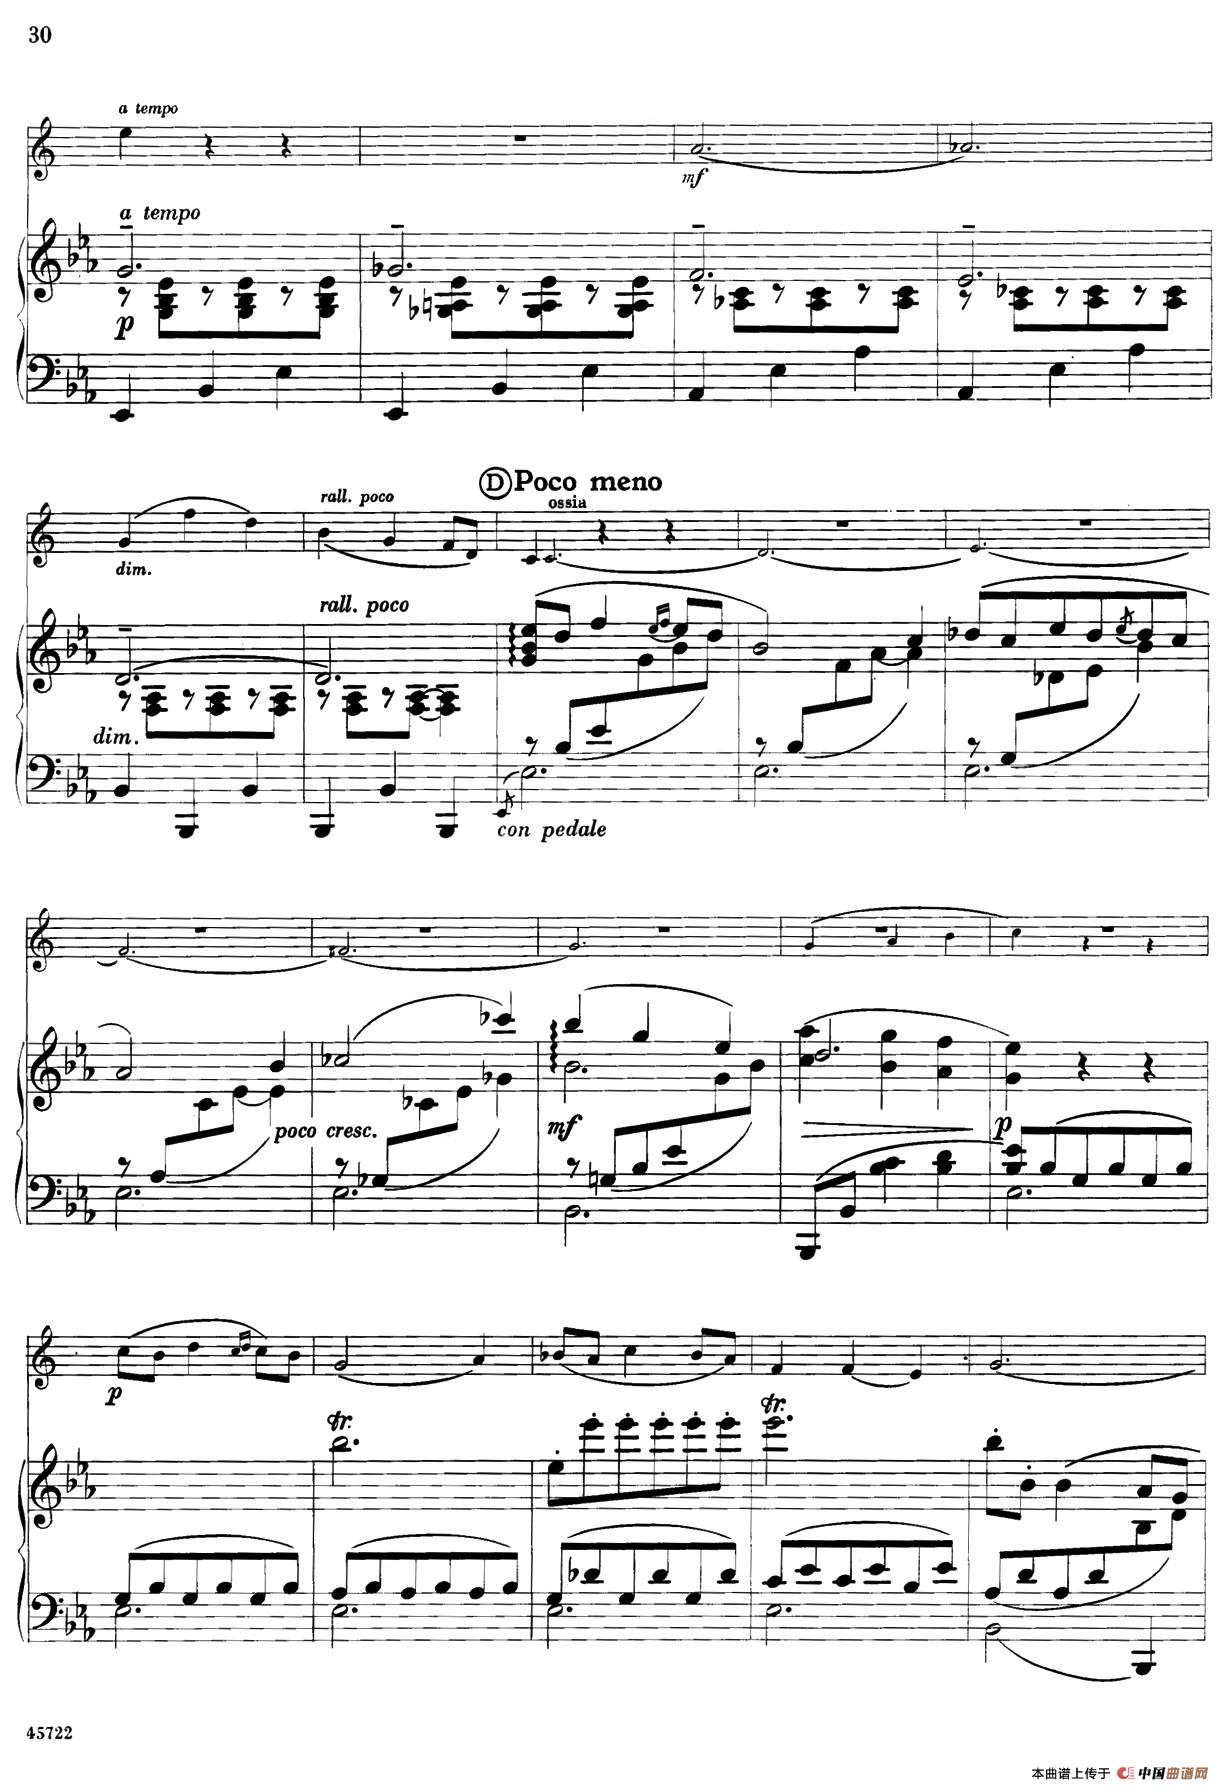 15首古典萨克斯独奏曲：6、Intermezzo（中音萨克斯